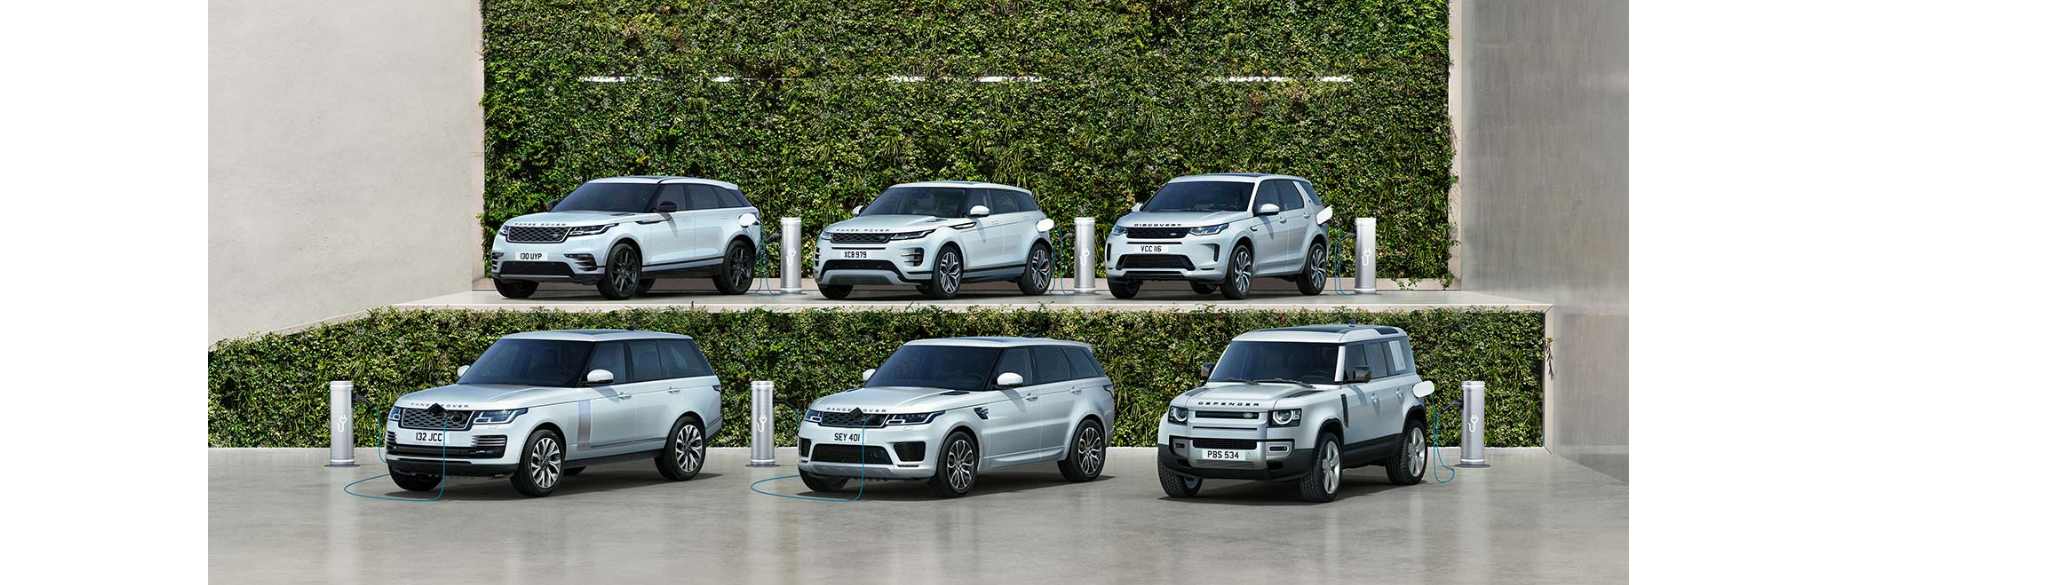 Land Rover PHEV range